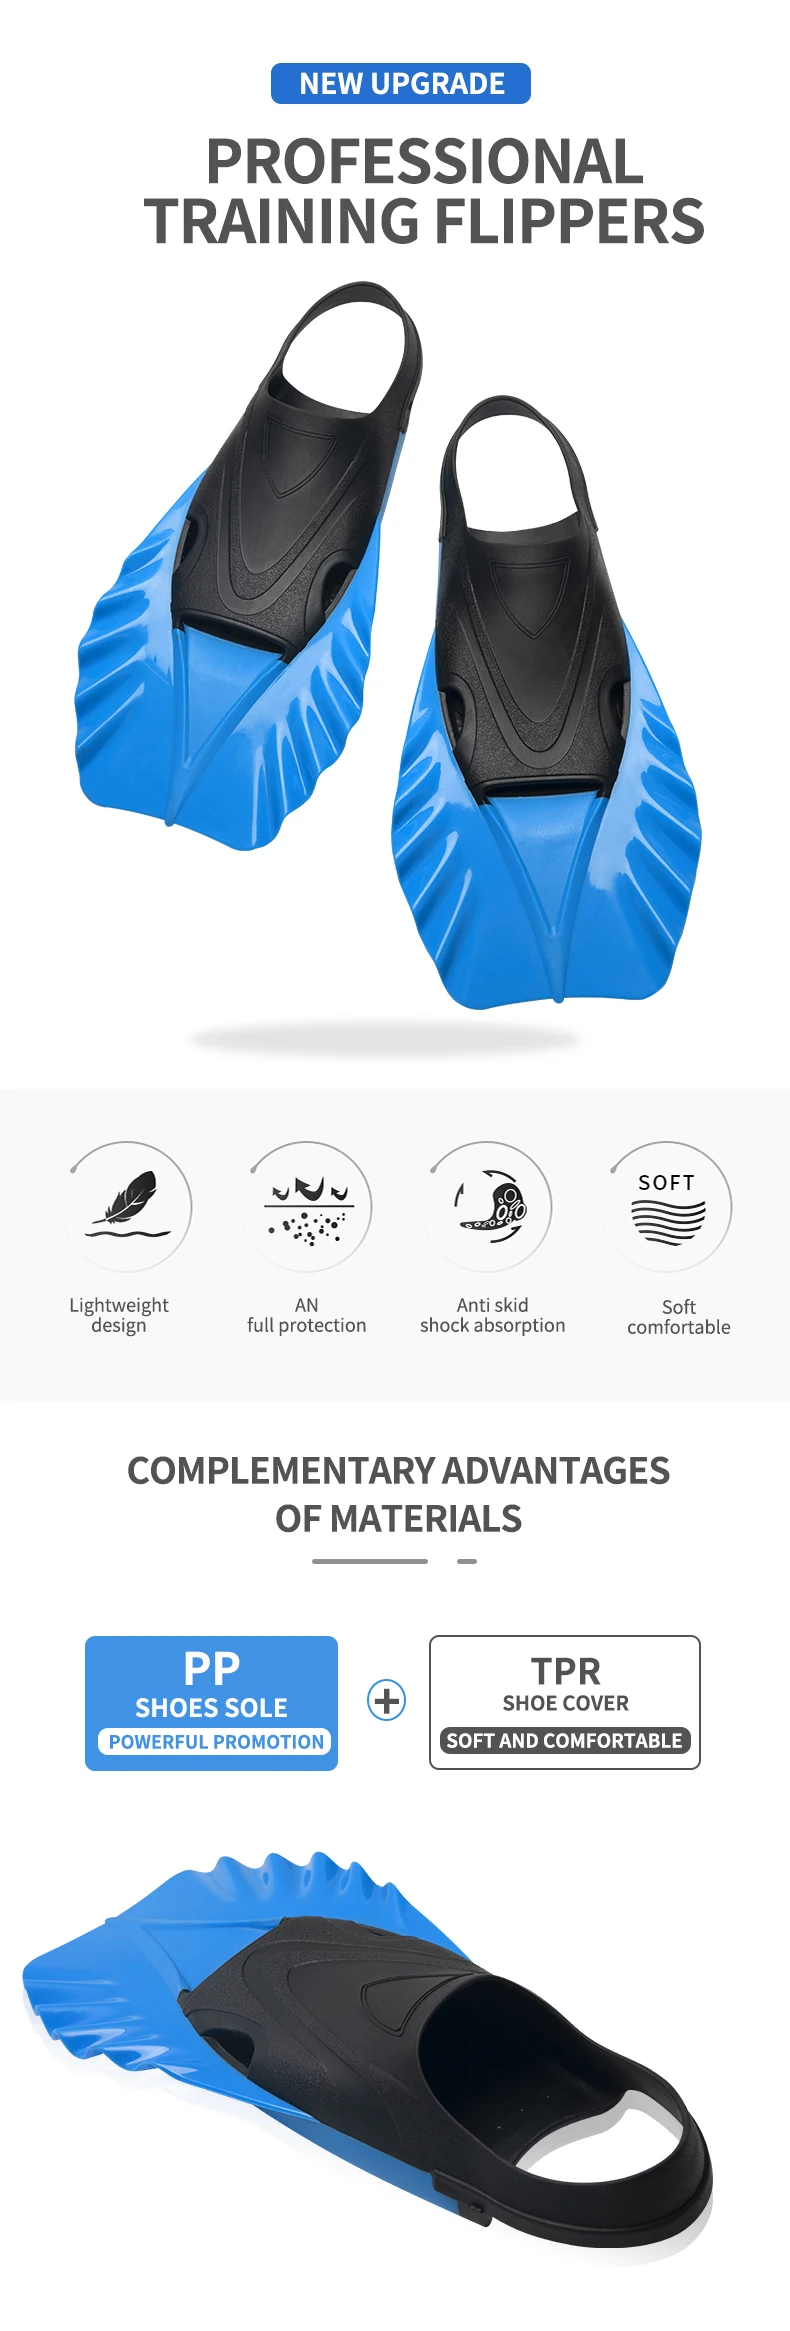 スキューバギアフィン水泳プール水泳用ショートフィン Buy 水泳用oem Odmショートフィン スキューバギアフィン 水泳フィン Product On Alibaba Com